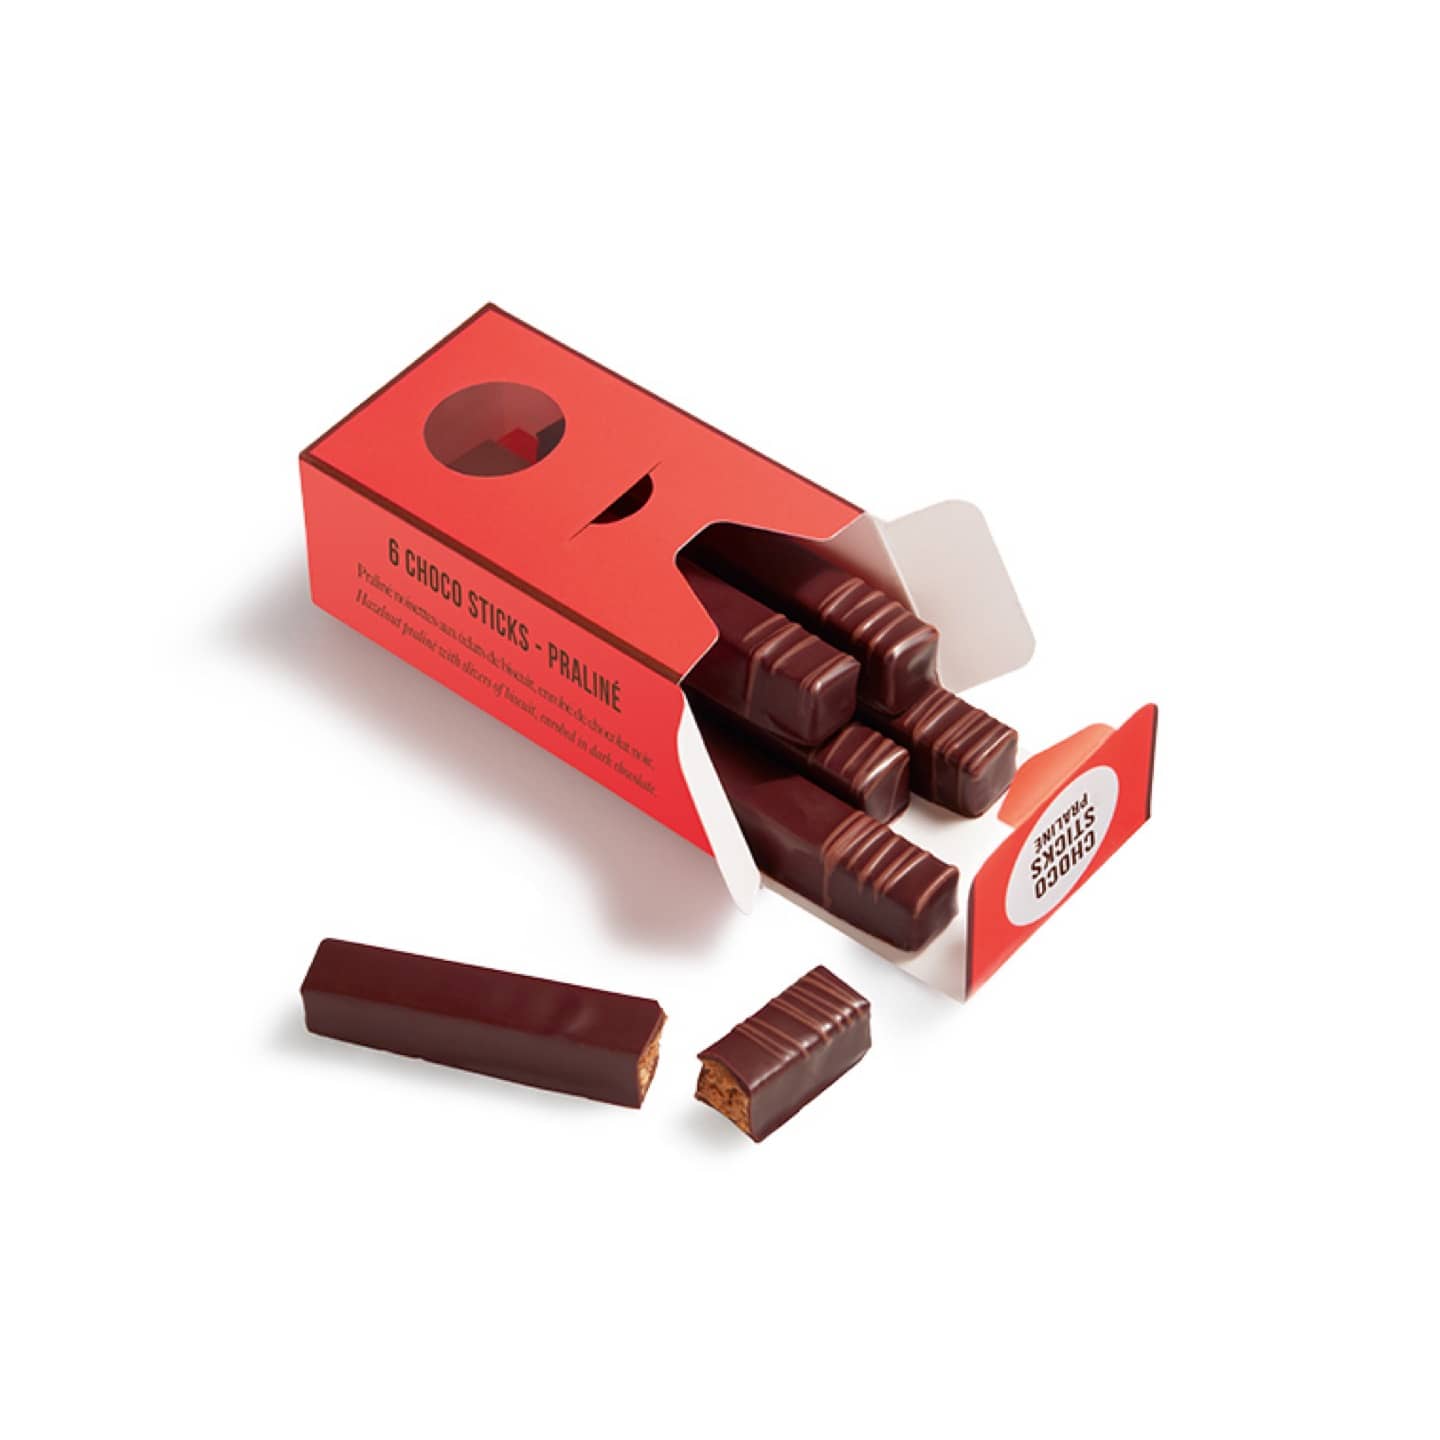 Praliné Noisette et Amande Chocolat Noir 55g - 6 pièces Choco Sticks